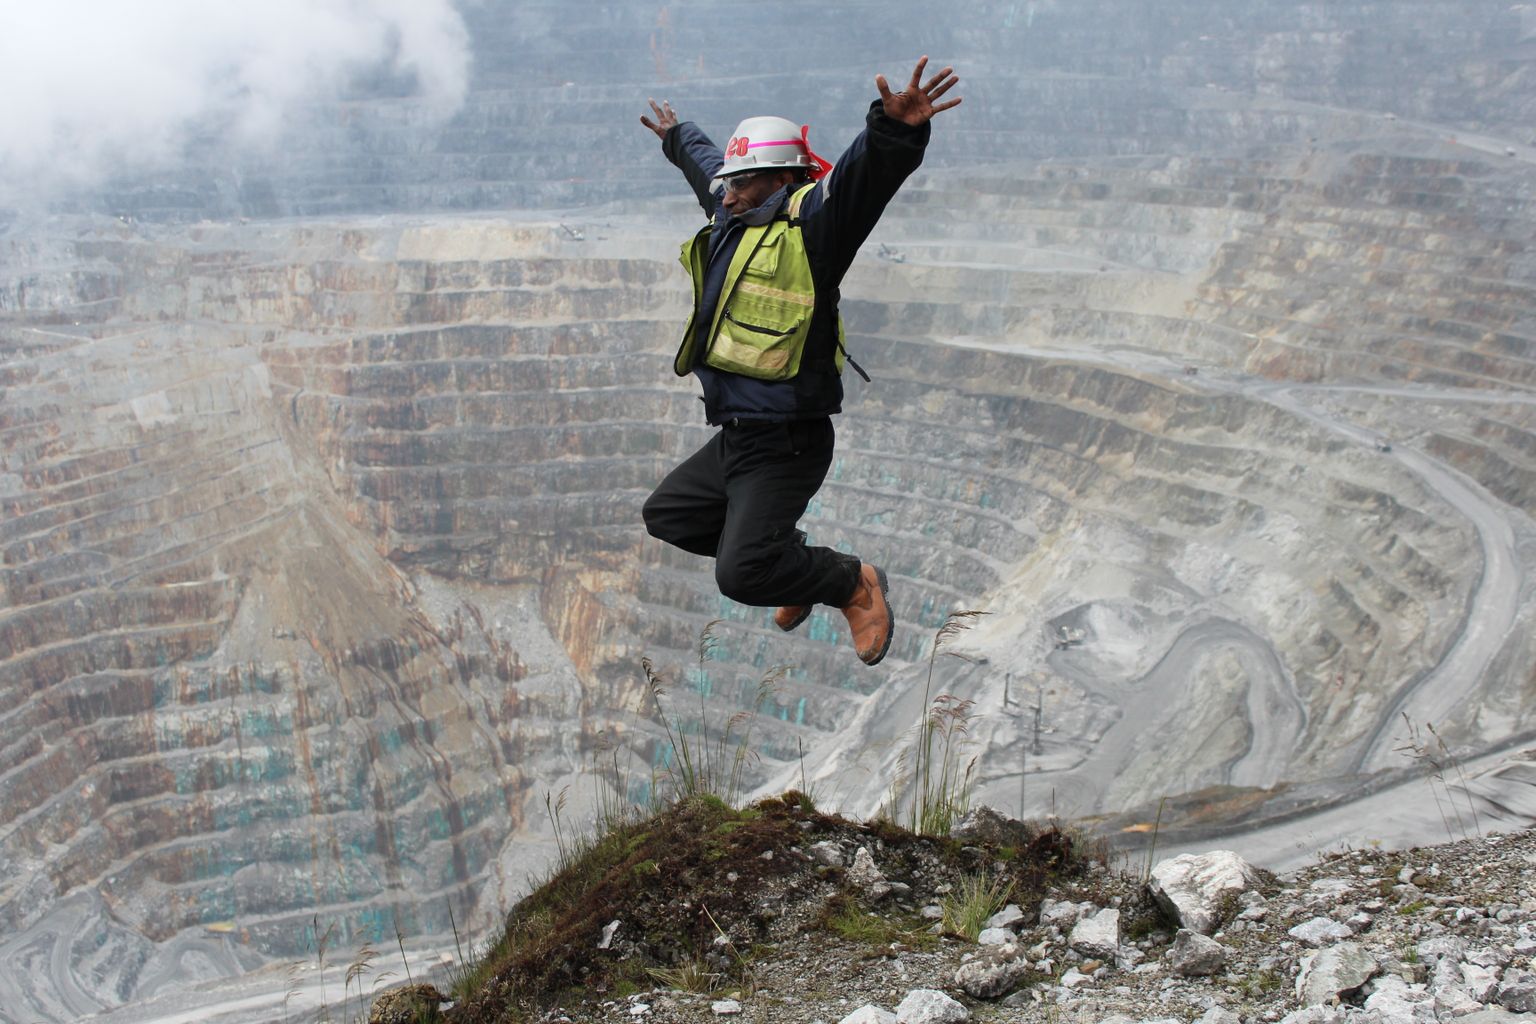 Grasbergi kaevandus Indoneesias on üks maailma suurimaid.